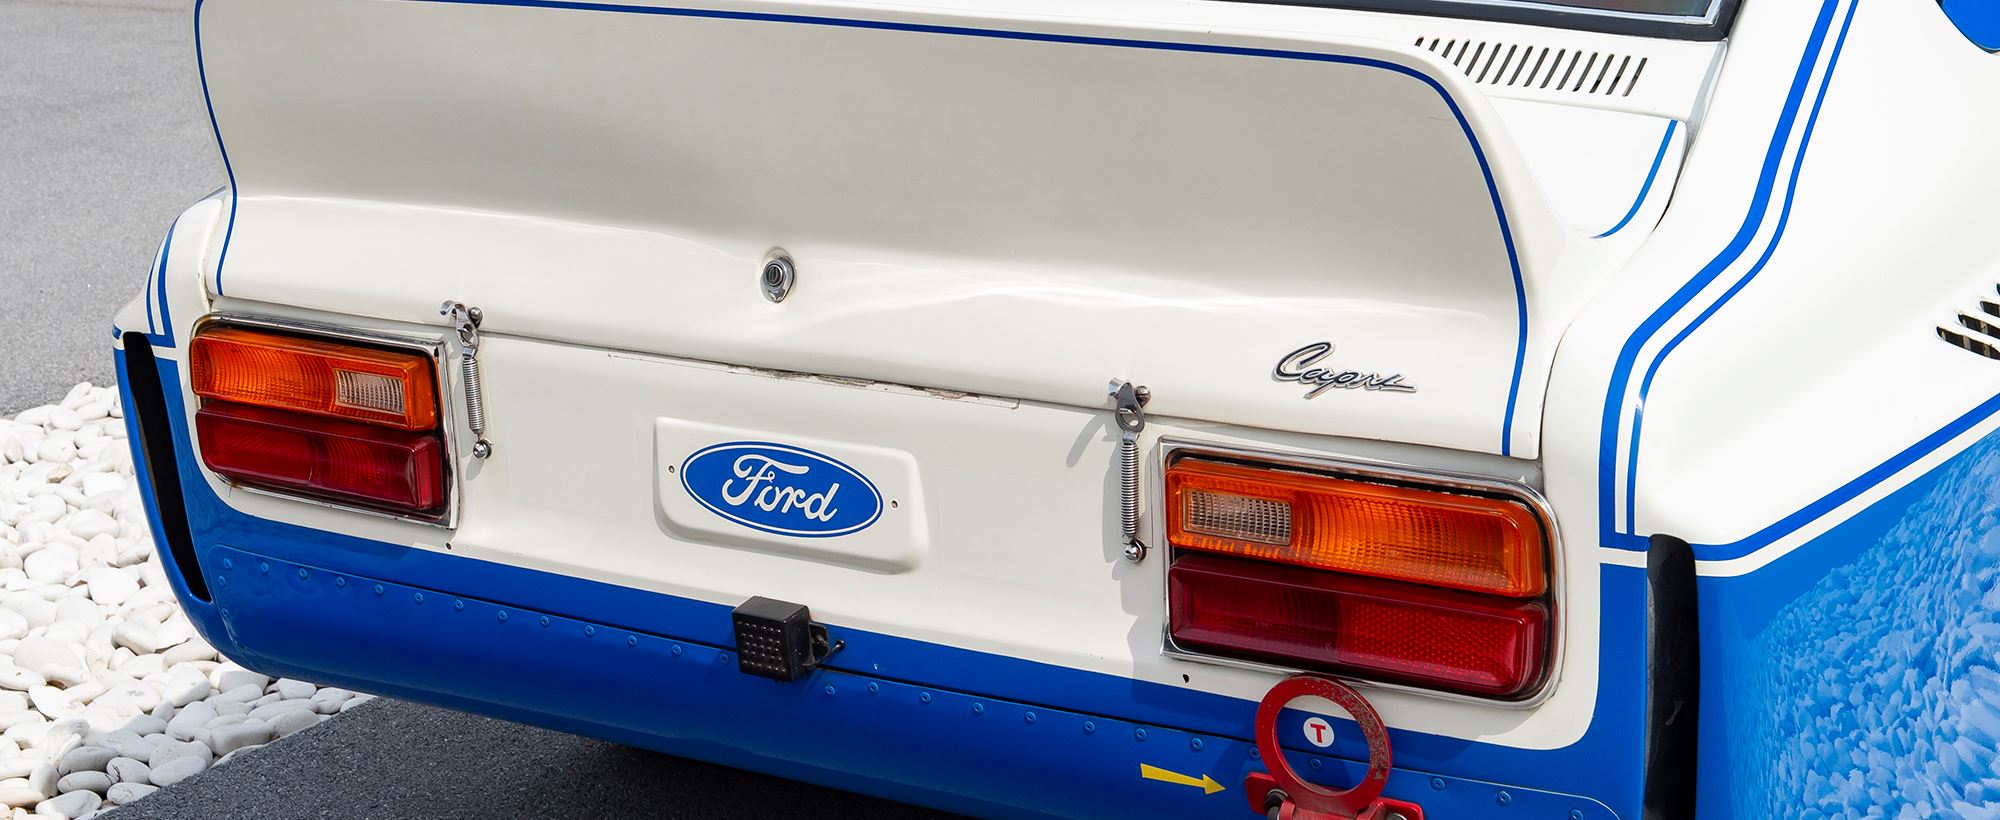 Ford Capri 030.jpg